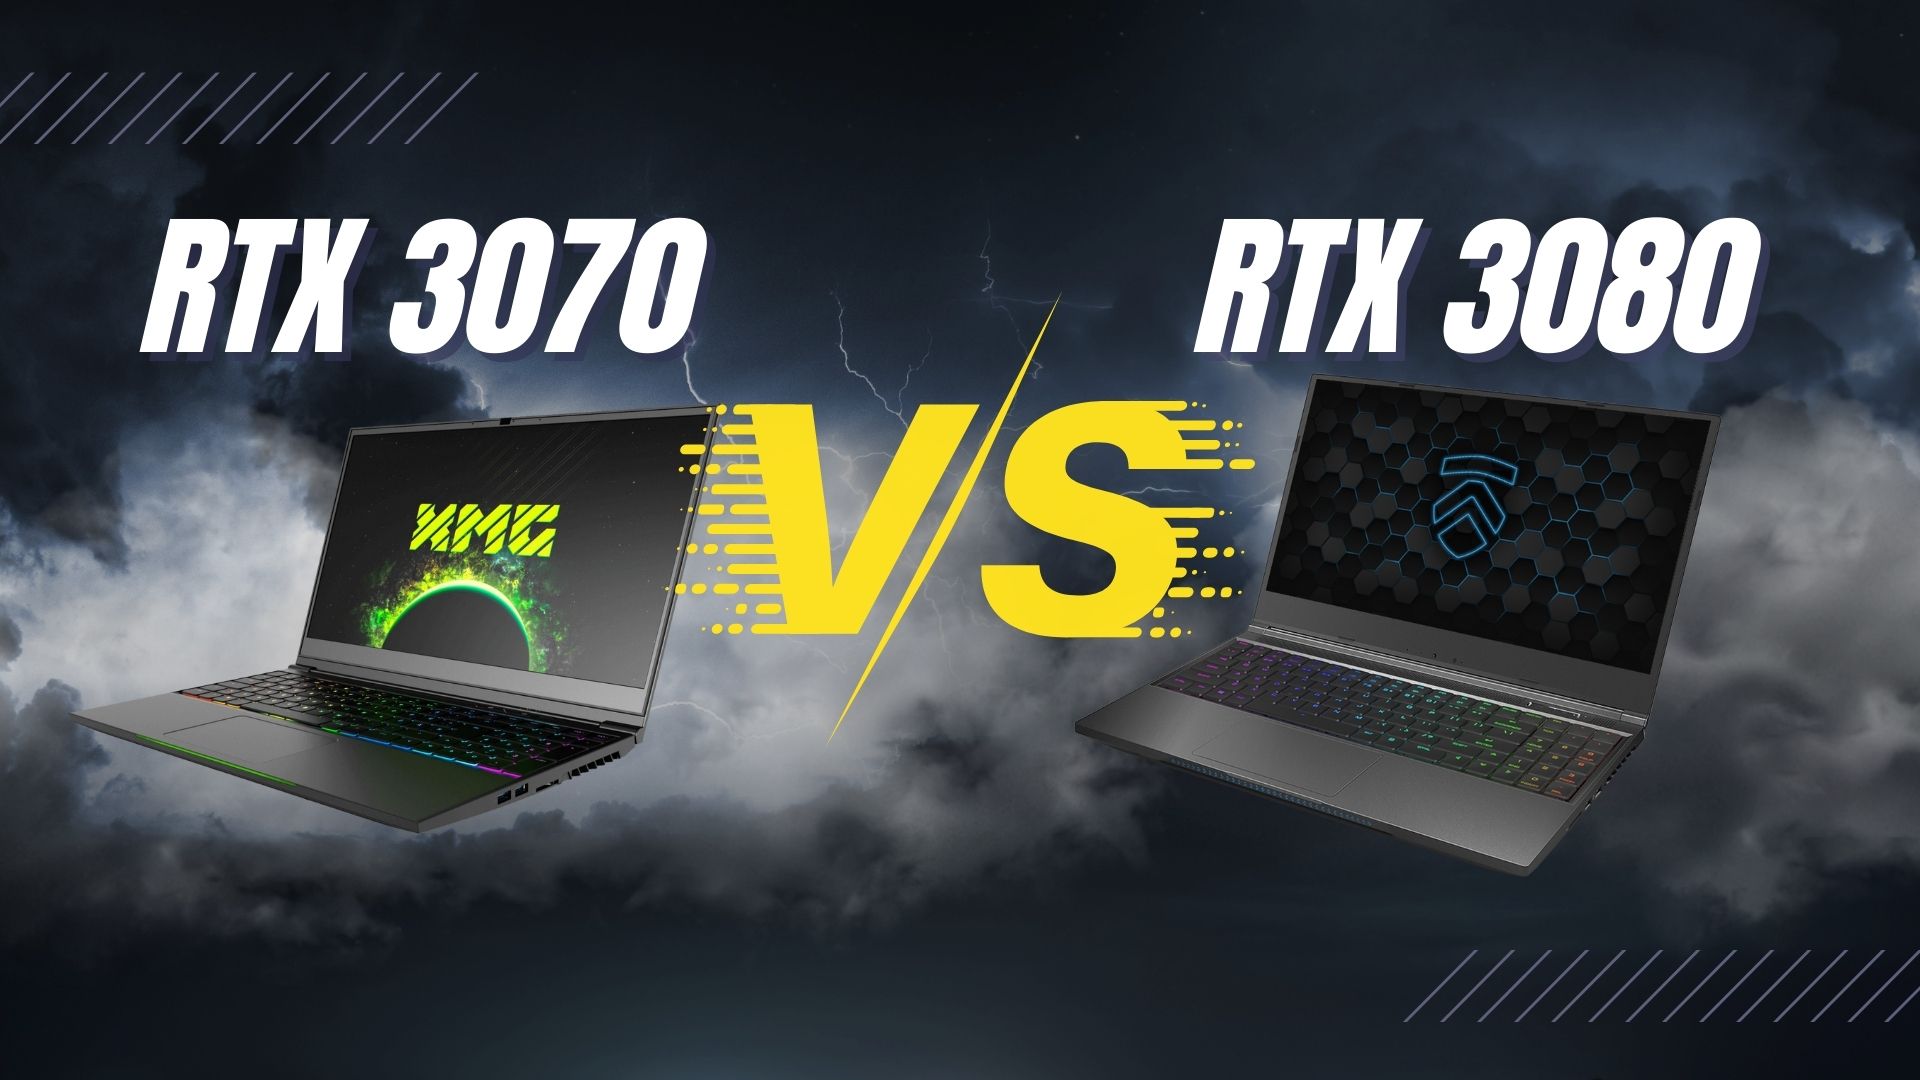 Nvidia RTX 3070 vs RTX 3080